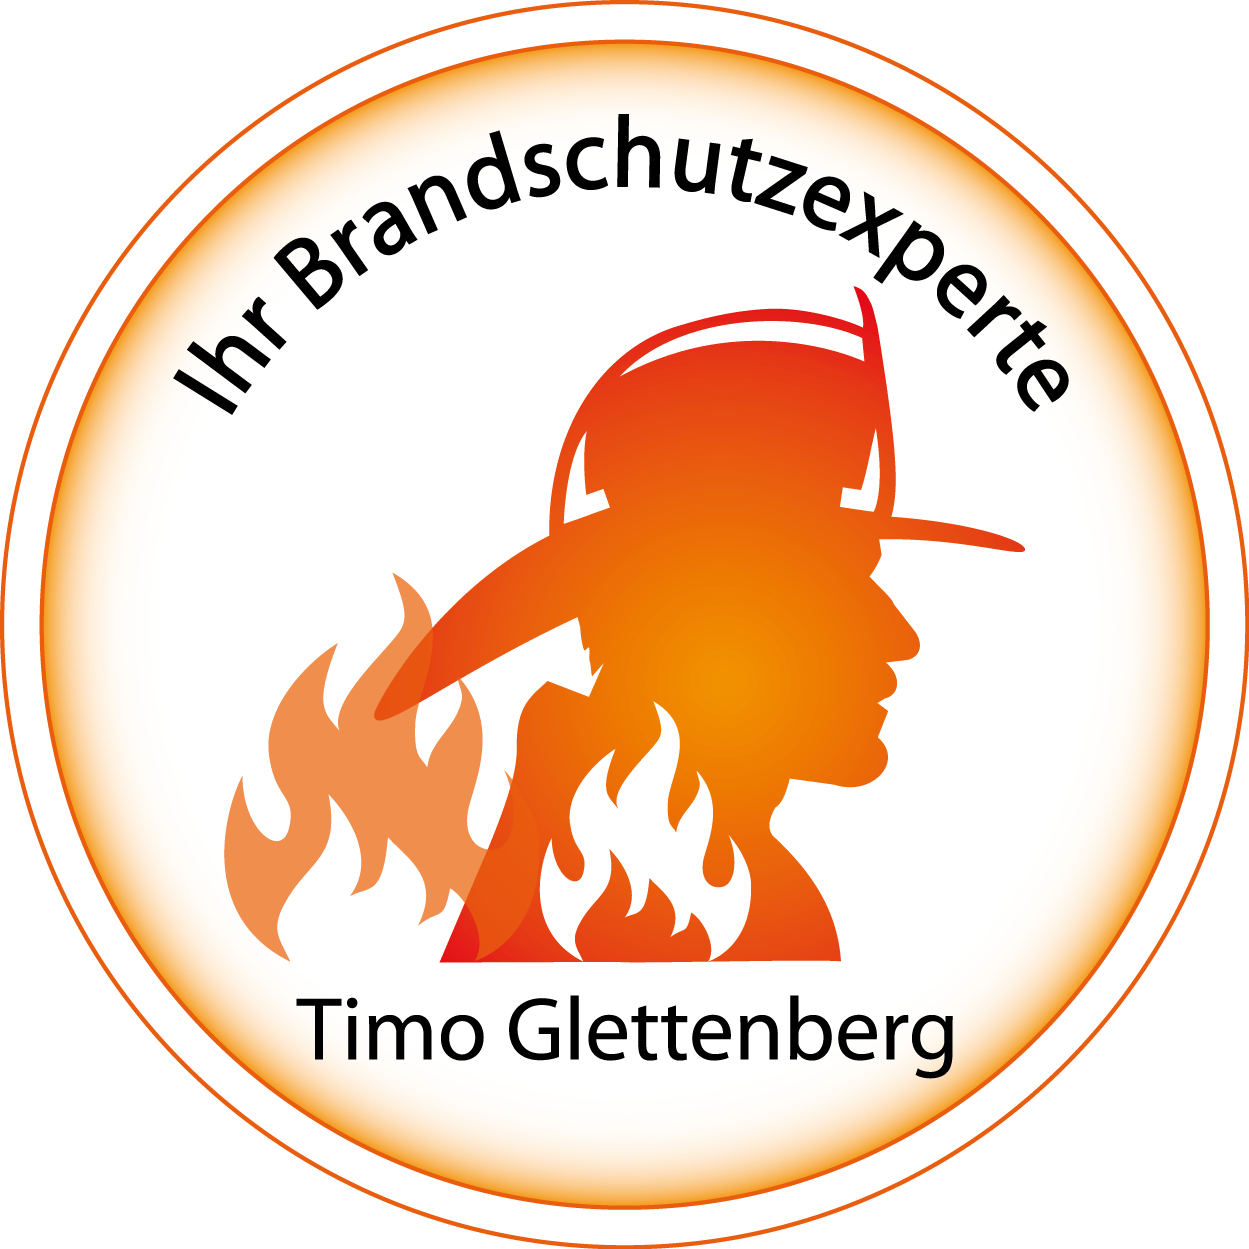 Brandschutz Glettenberg